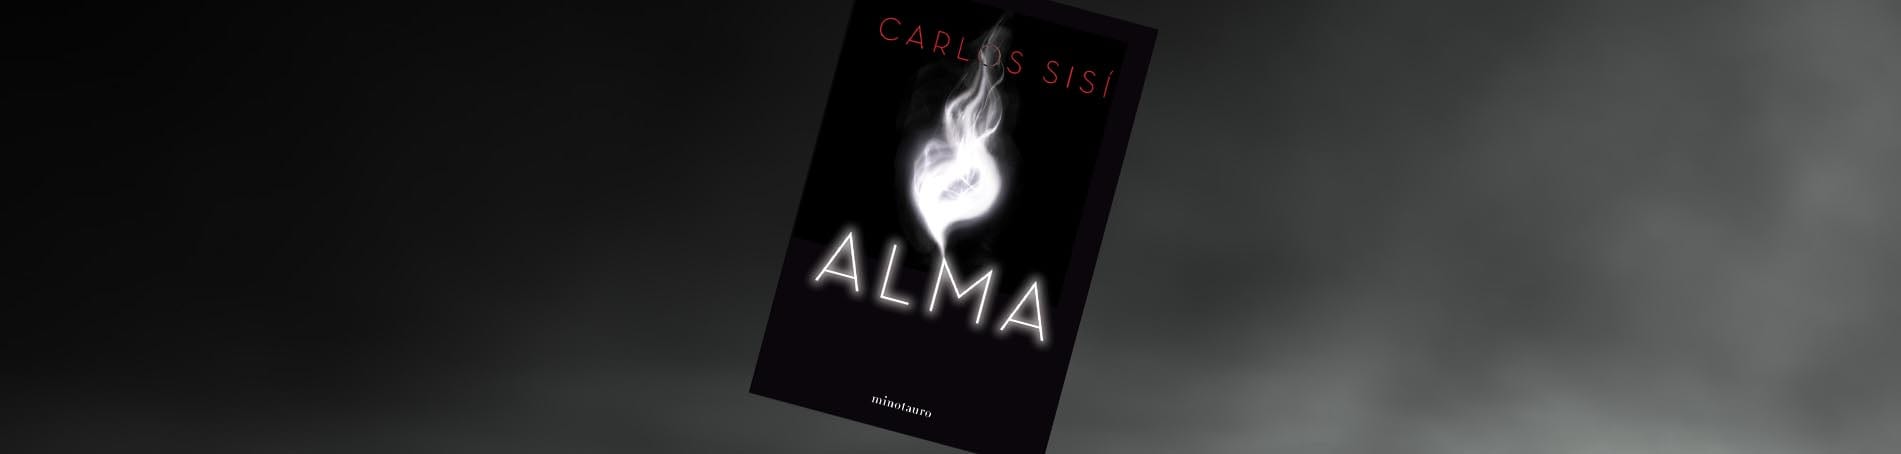 5 razones para leer… “Alma” de Carlos Sisí